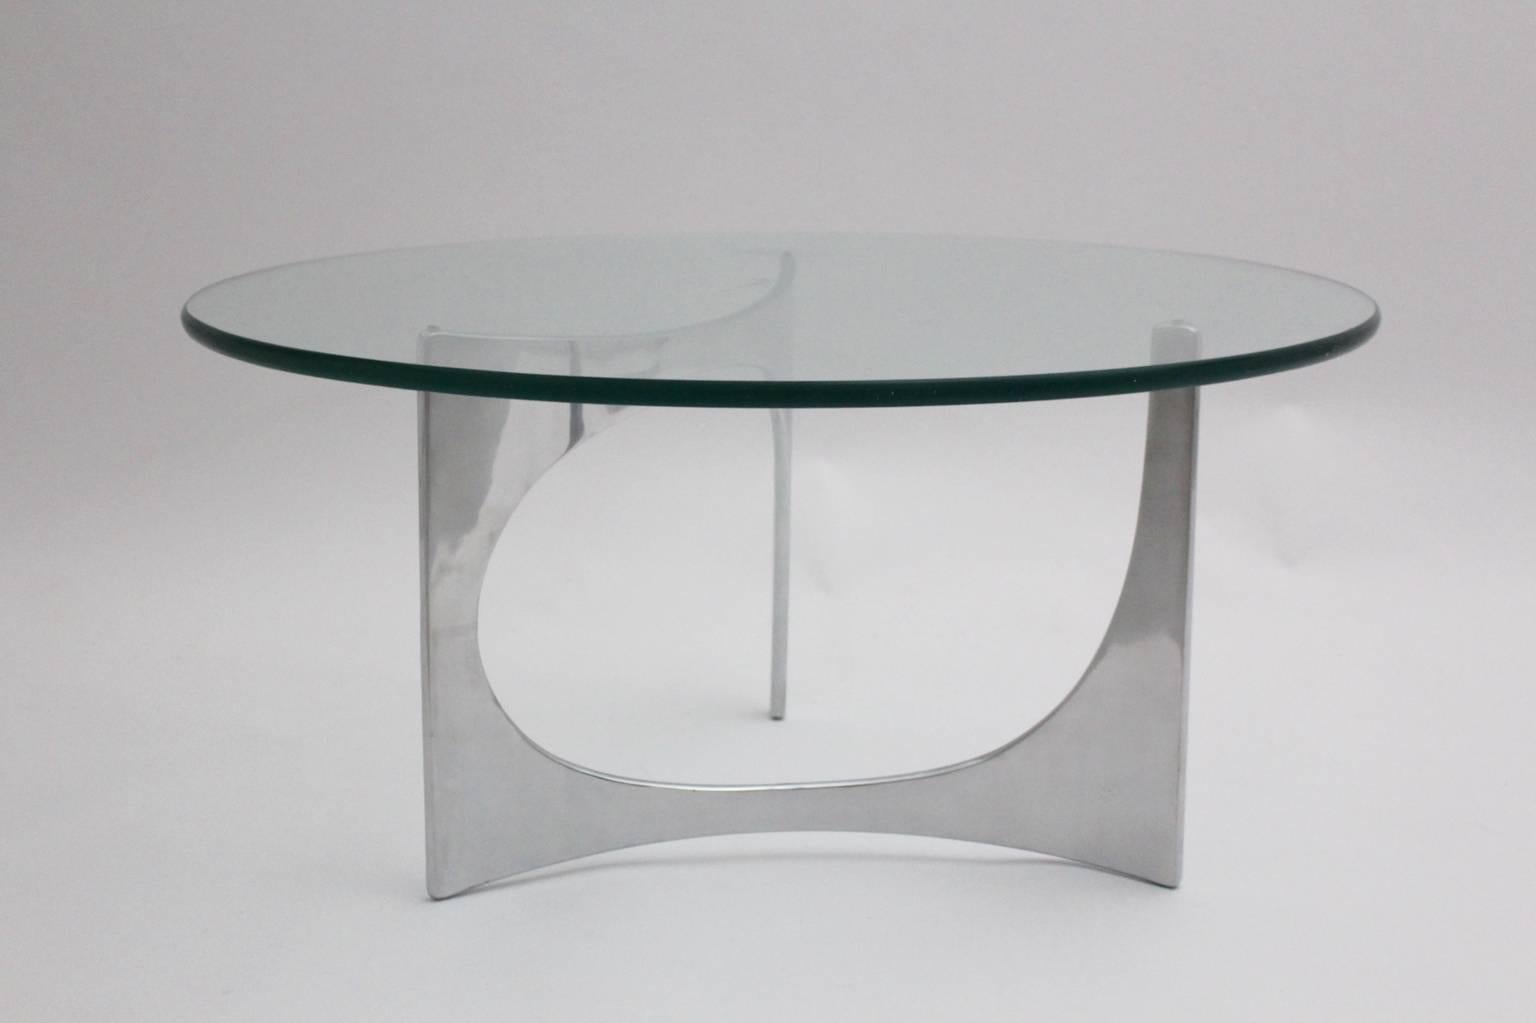 Table basse vintage en métal de l'ère spatiale, conçue par Knut Hesterberg et produite par Bacher Tische Germany vers 1970.
La table basse est composée d'une base en fonte d'aluminium polie et d'un plateau en verre transparent, qui présente quelques